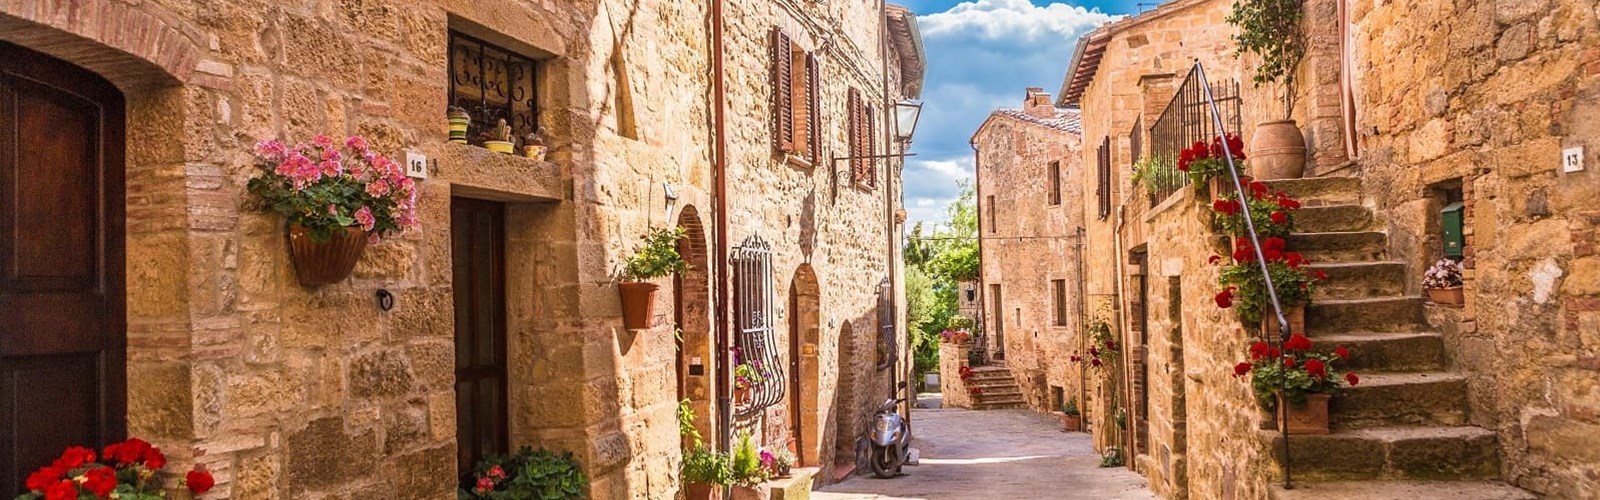 Landsby i Toscana i Italien